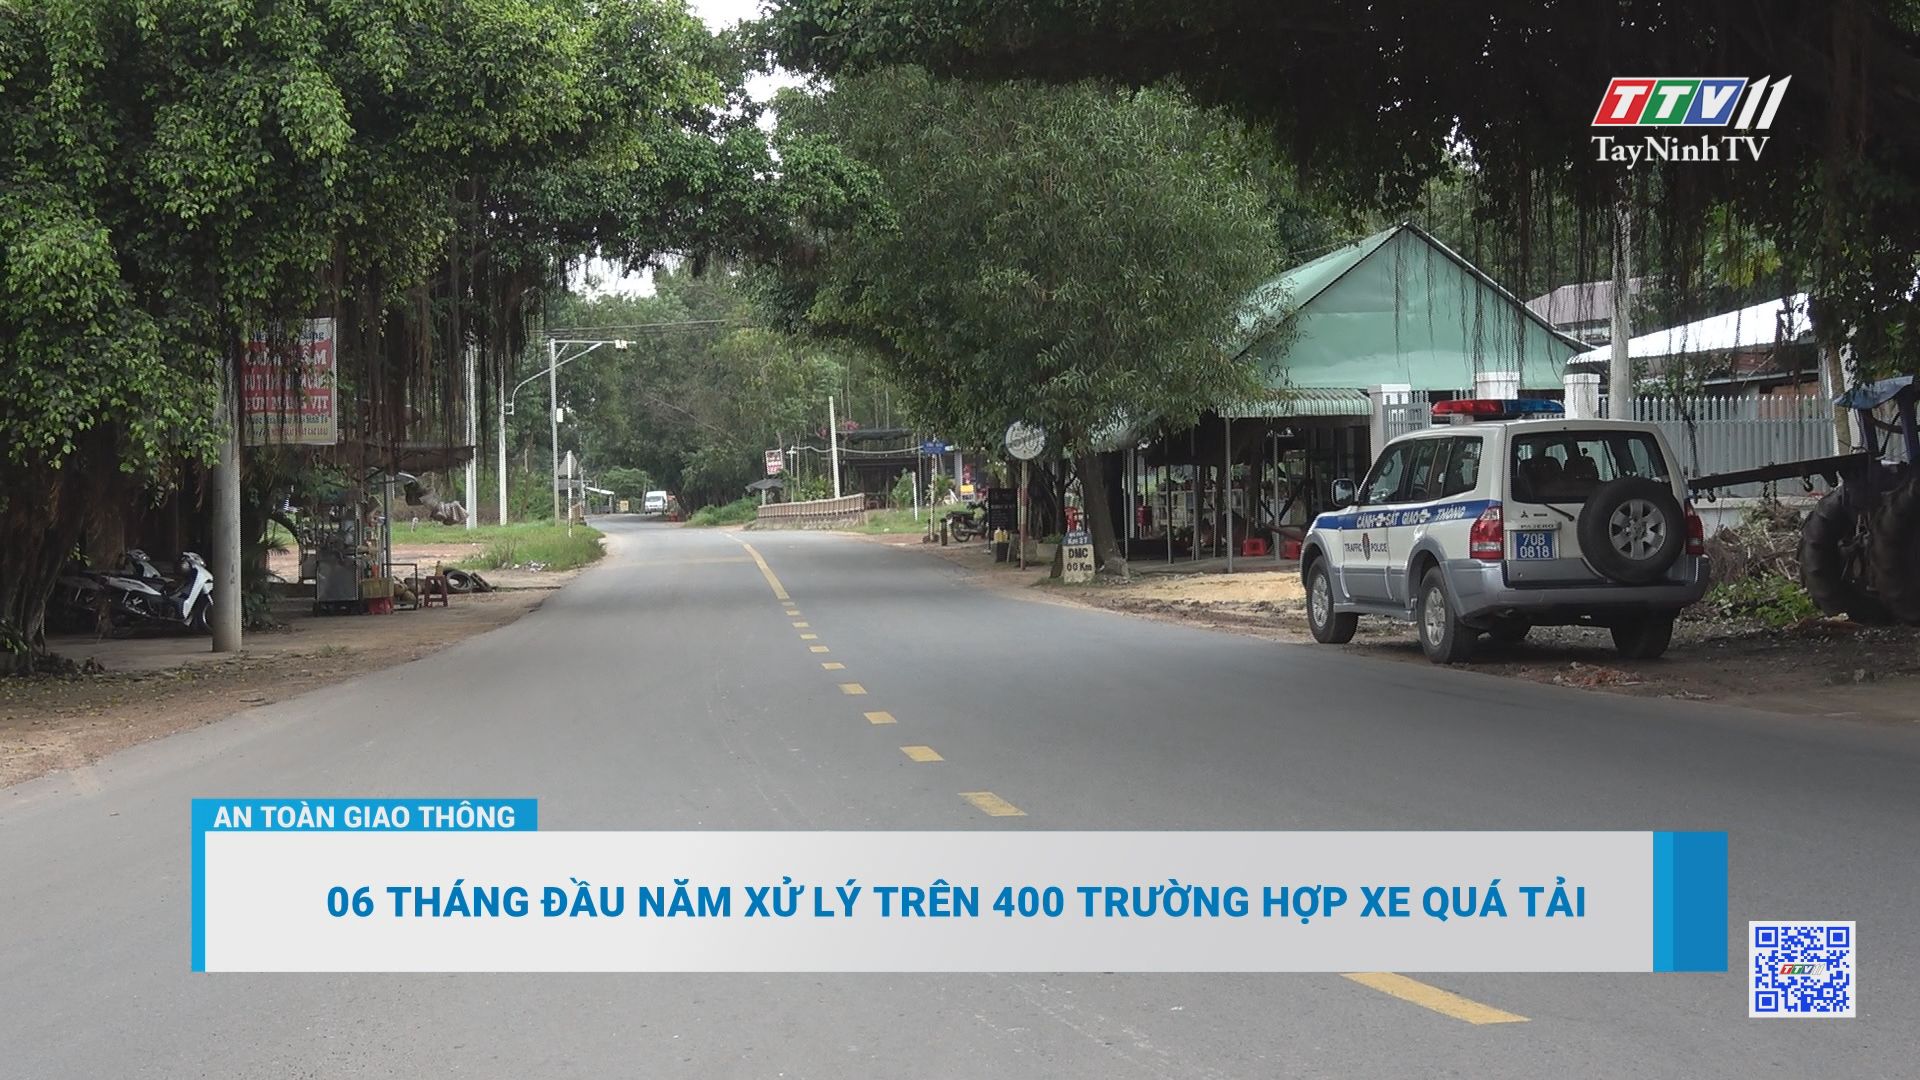 06 tháng đầu năm xử lý trên 400 trường hợp xe quá tải | AN TOÀN GIAO THÔNG | TayNinhTV